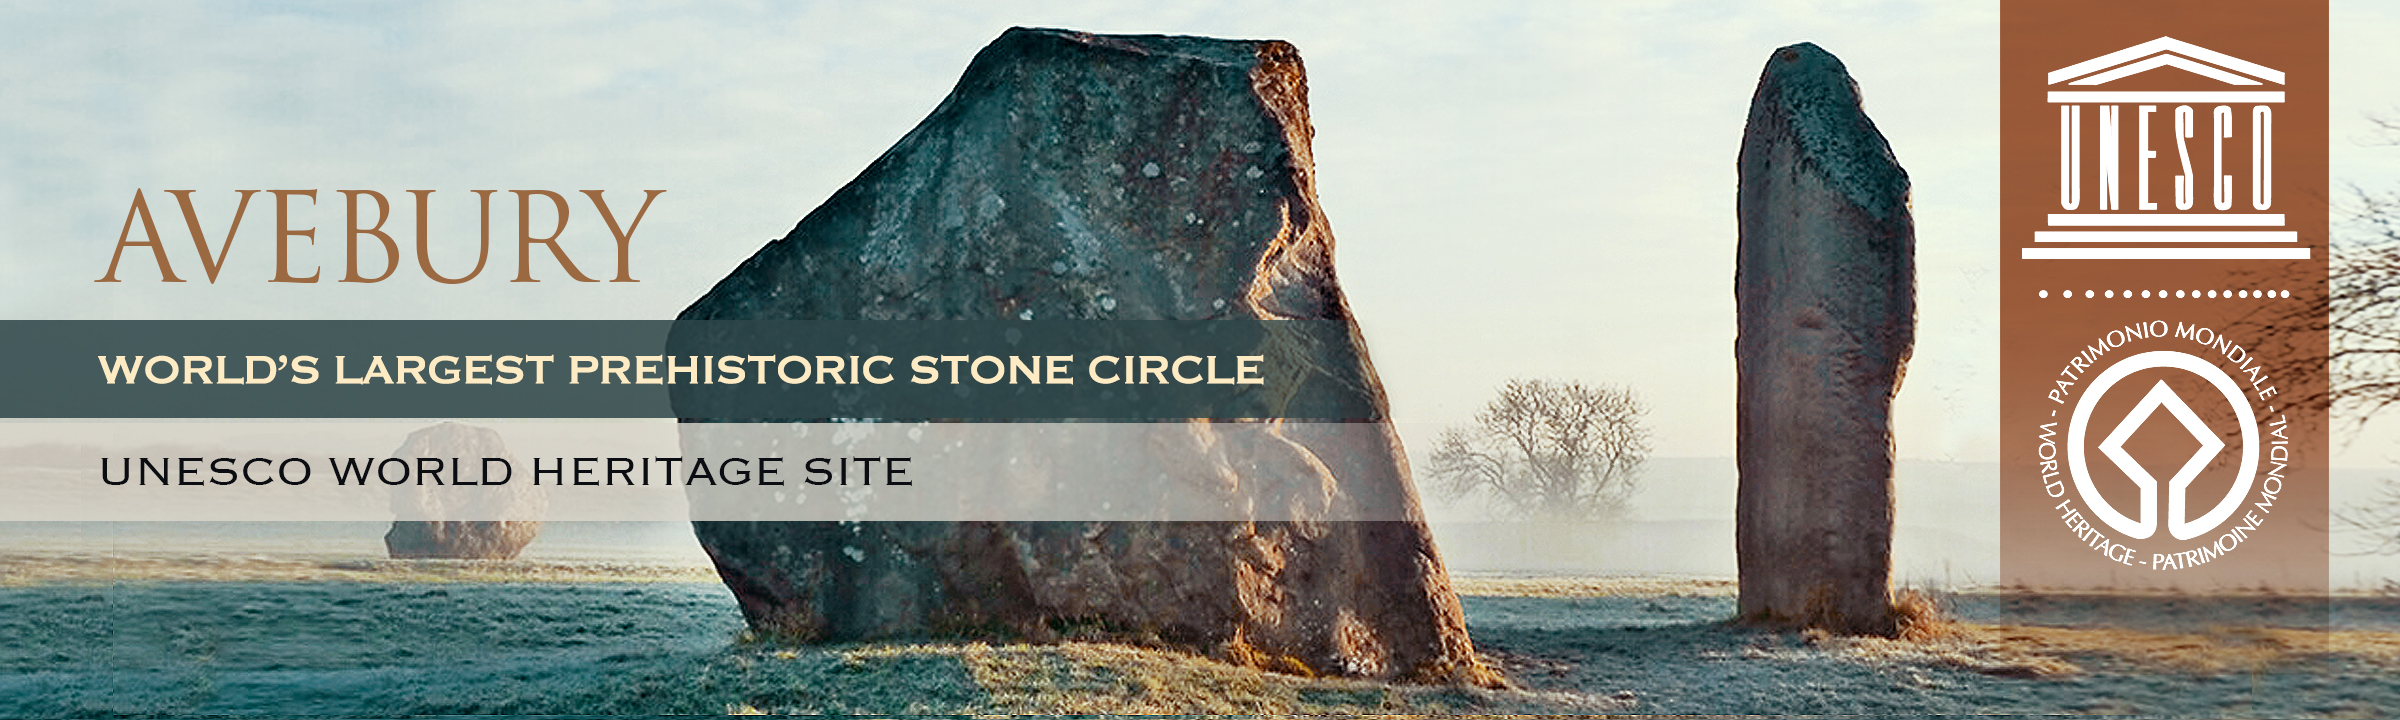 Avebury The World's Largest Prehistoric Stone Circle Archaeology Bradshaw Foundation